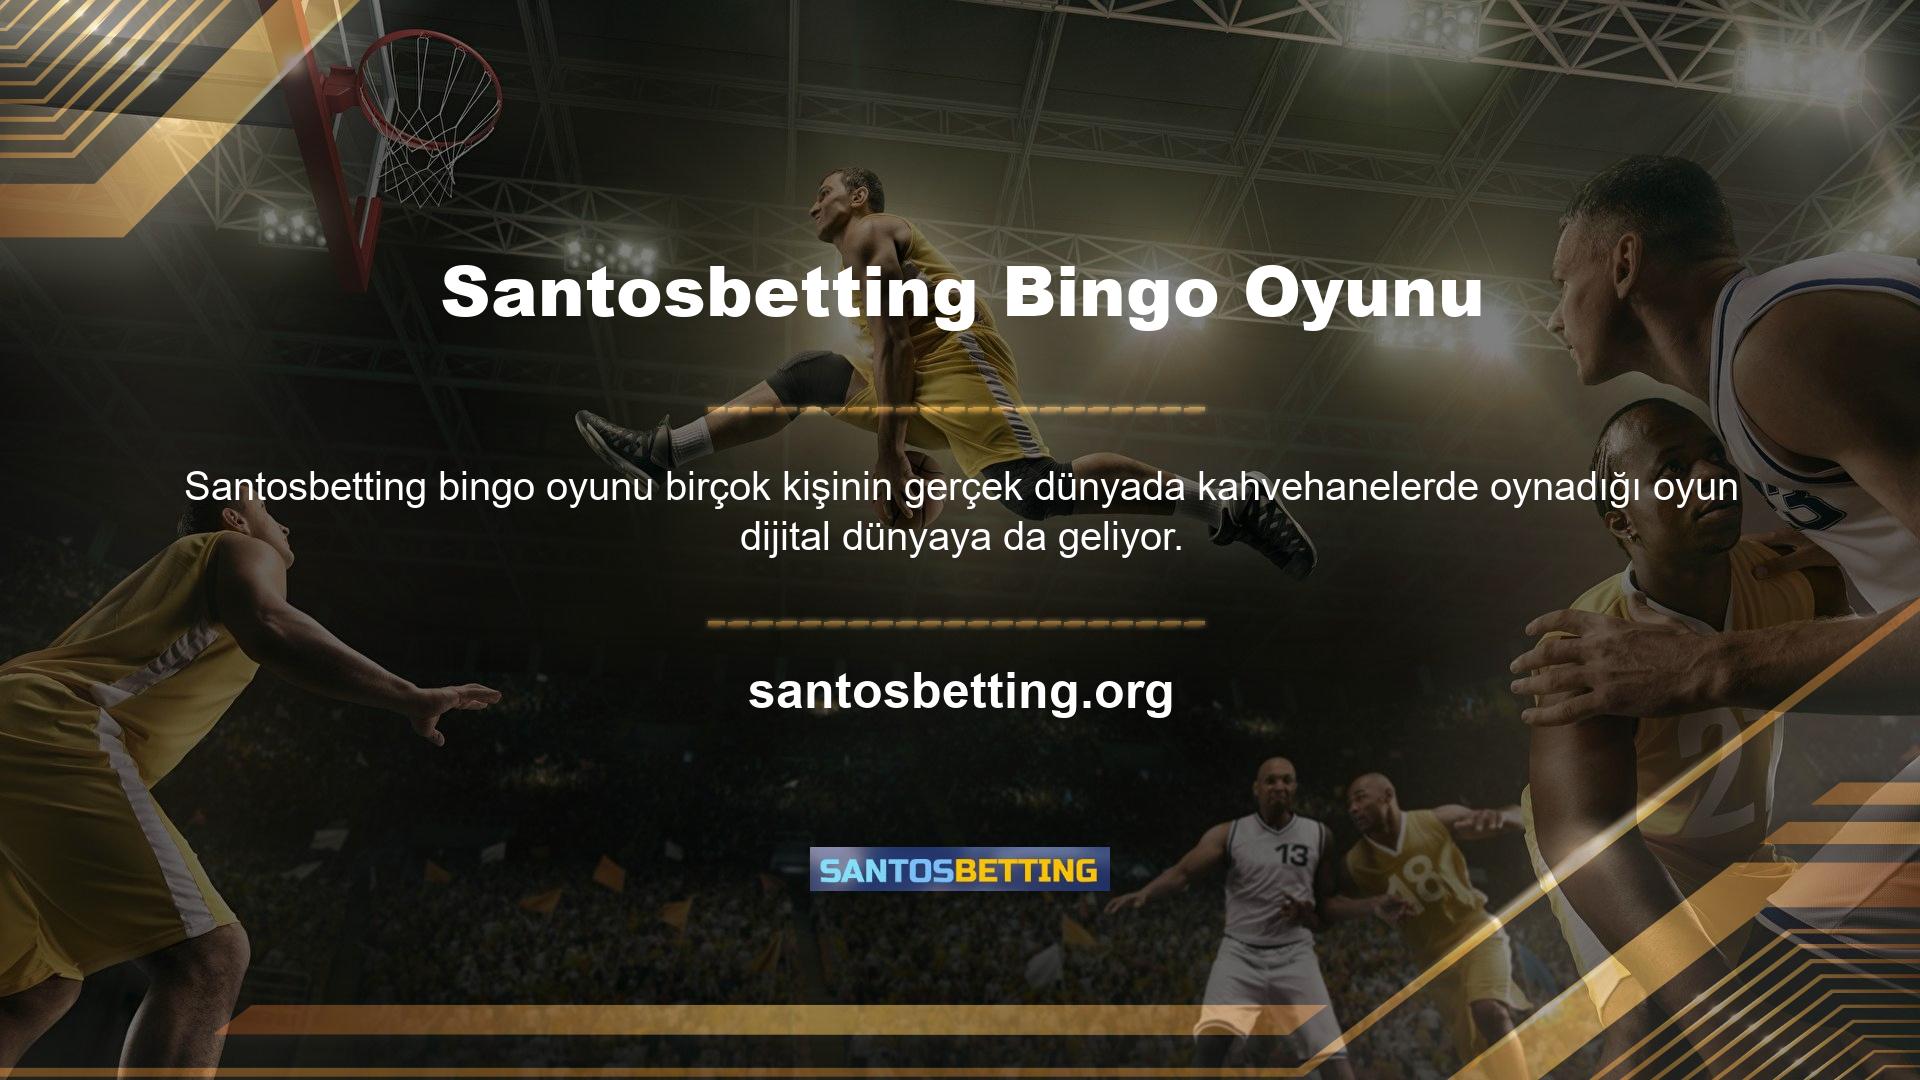 Santosbetting Bingo ile çalışmak ve para kazanmak çok eğlenceli